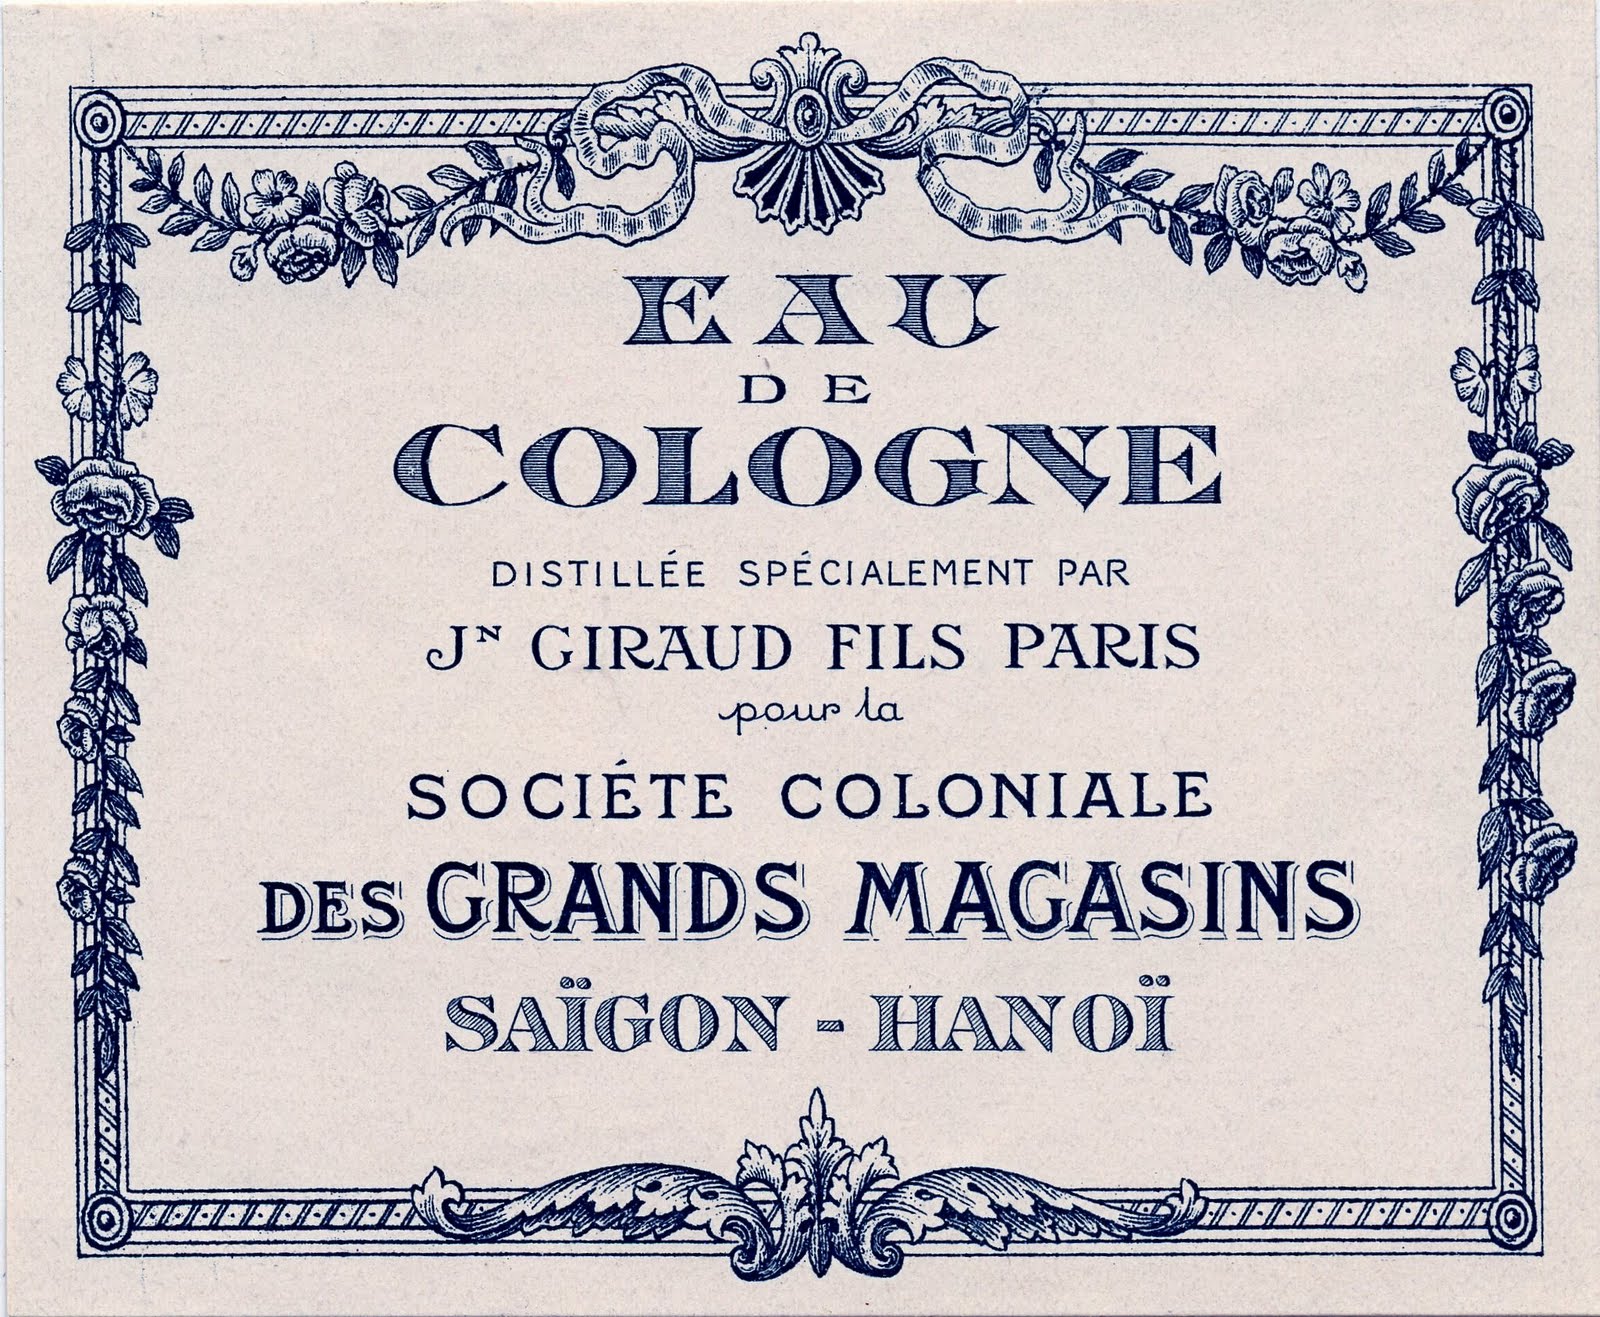 Vintage Graphics - Gorgeous Paris Cologne Label - The Graphics Fairy